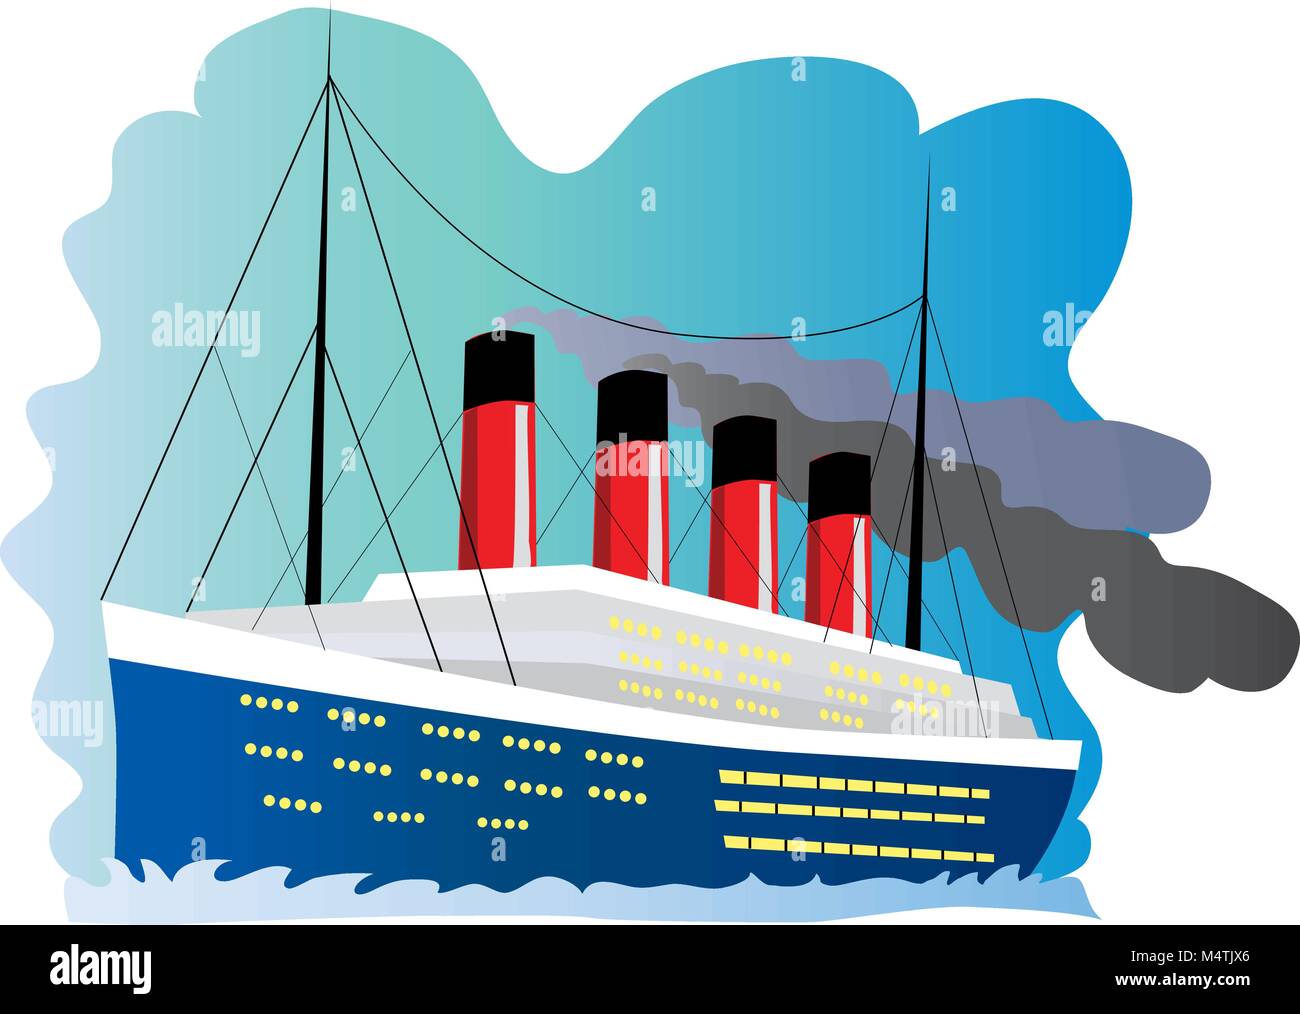 Illustration d'une caricature du navire Titanic Illustration de Vecteur